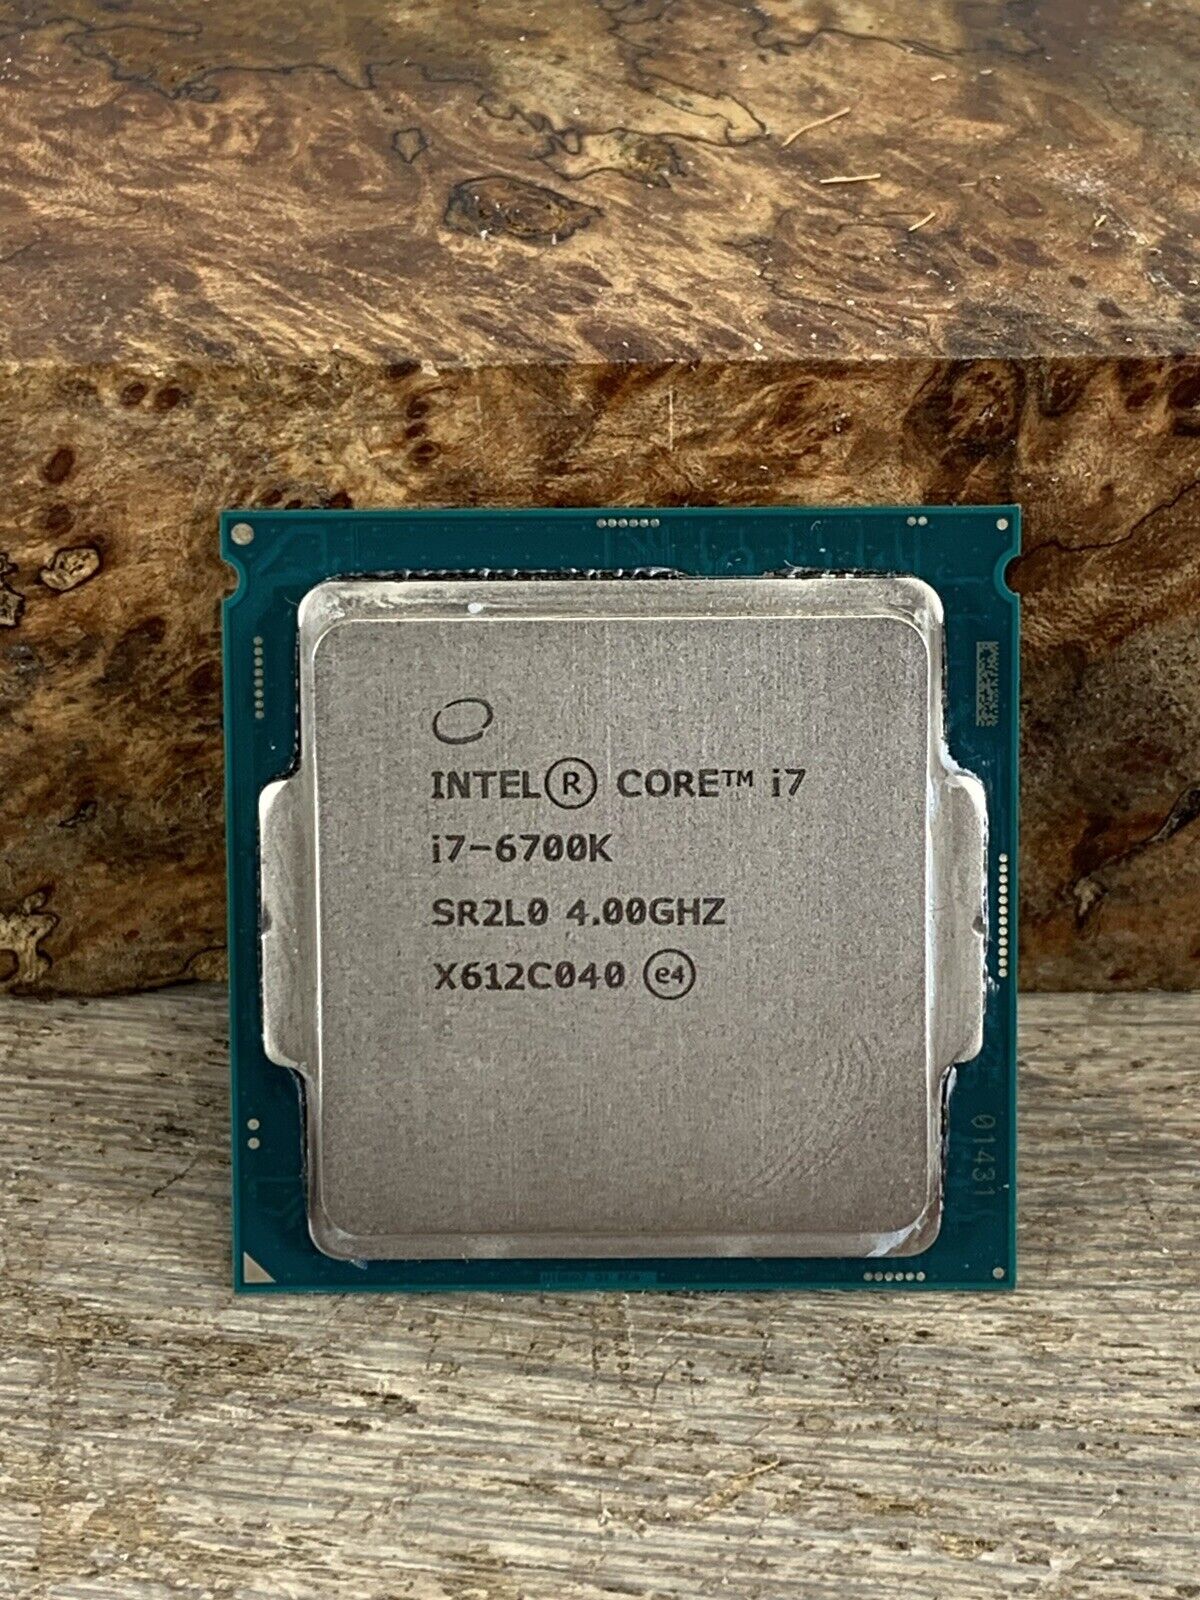 Intel Core i7-6700K 4.00GHz Quad-Core 8MB LGA 1151/Socket H4 CPU Processor SR2L0